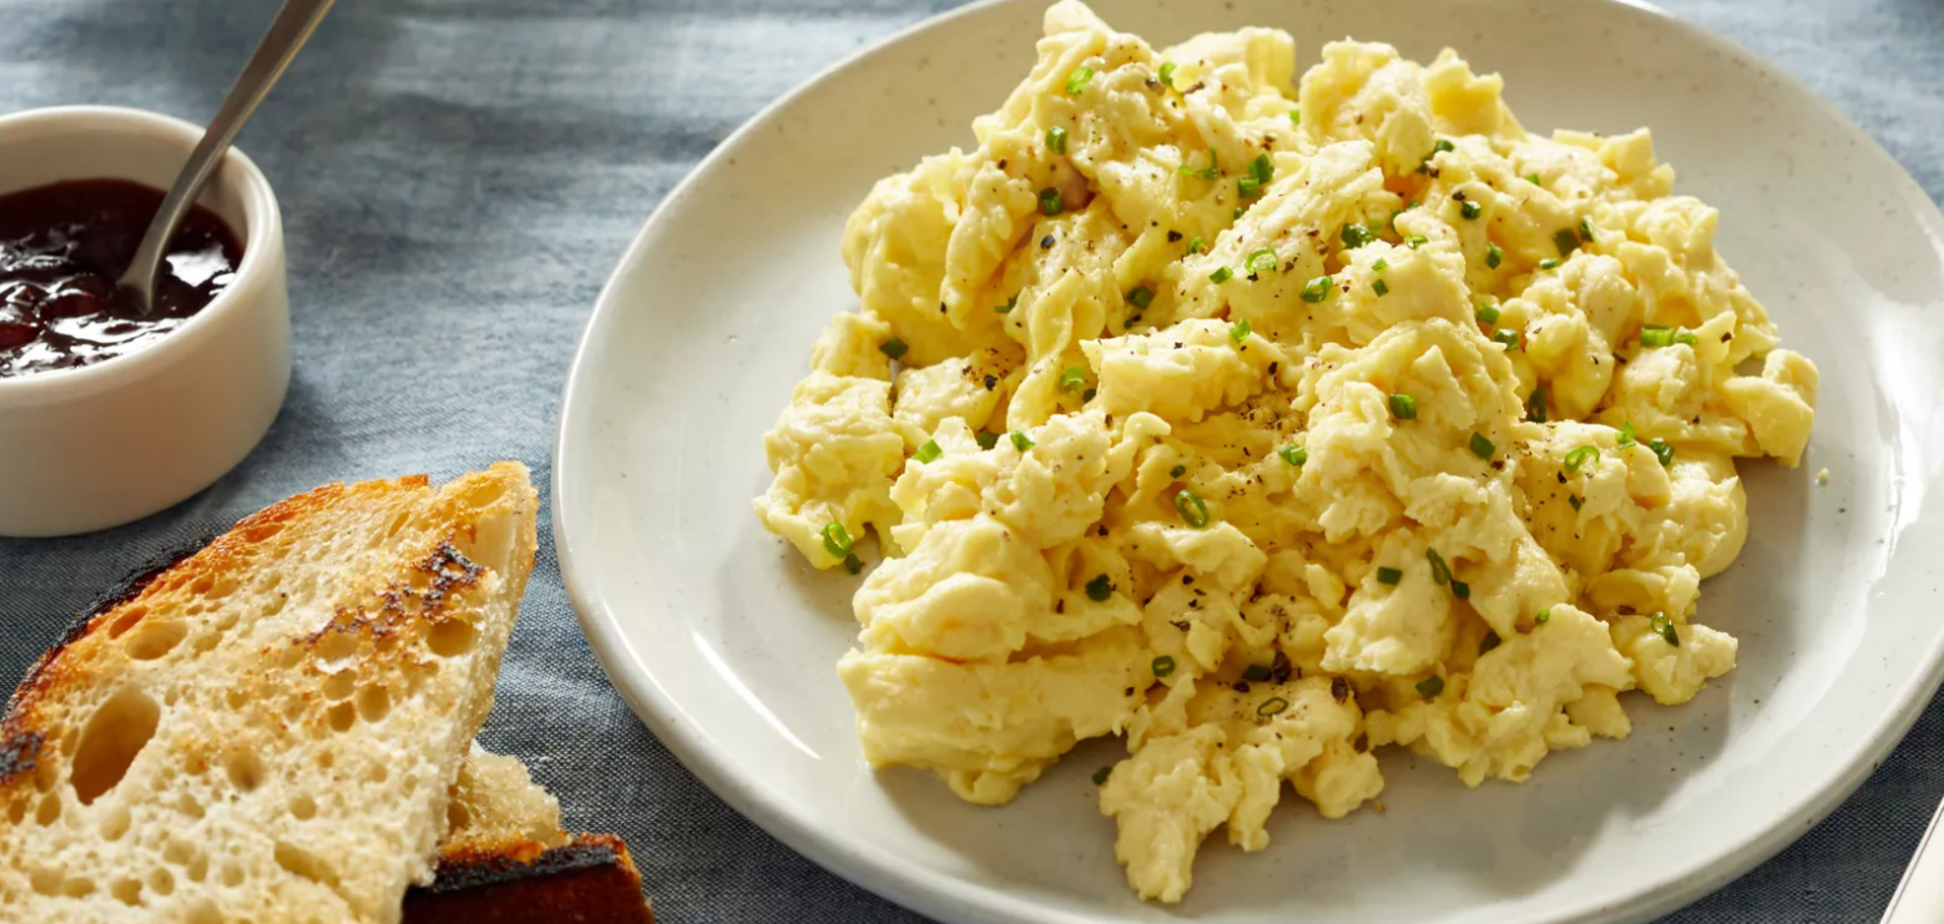 Не яєчня і не омлет: що цікавого приготувати з яєць на сніданок за 10 хвилин